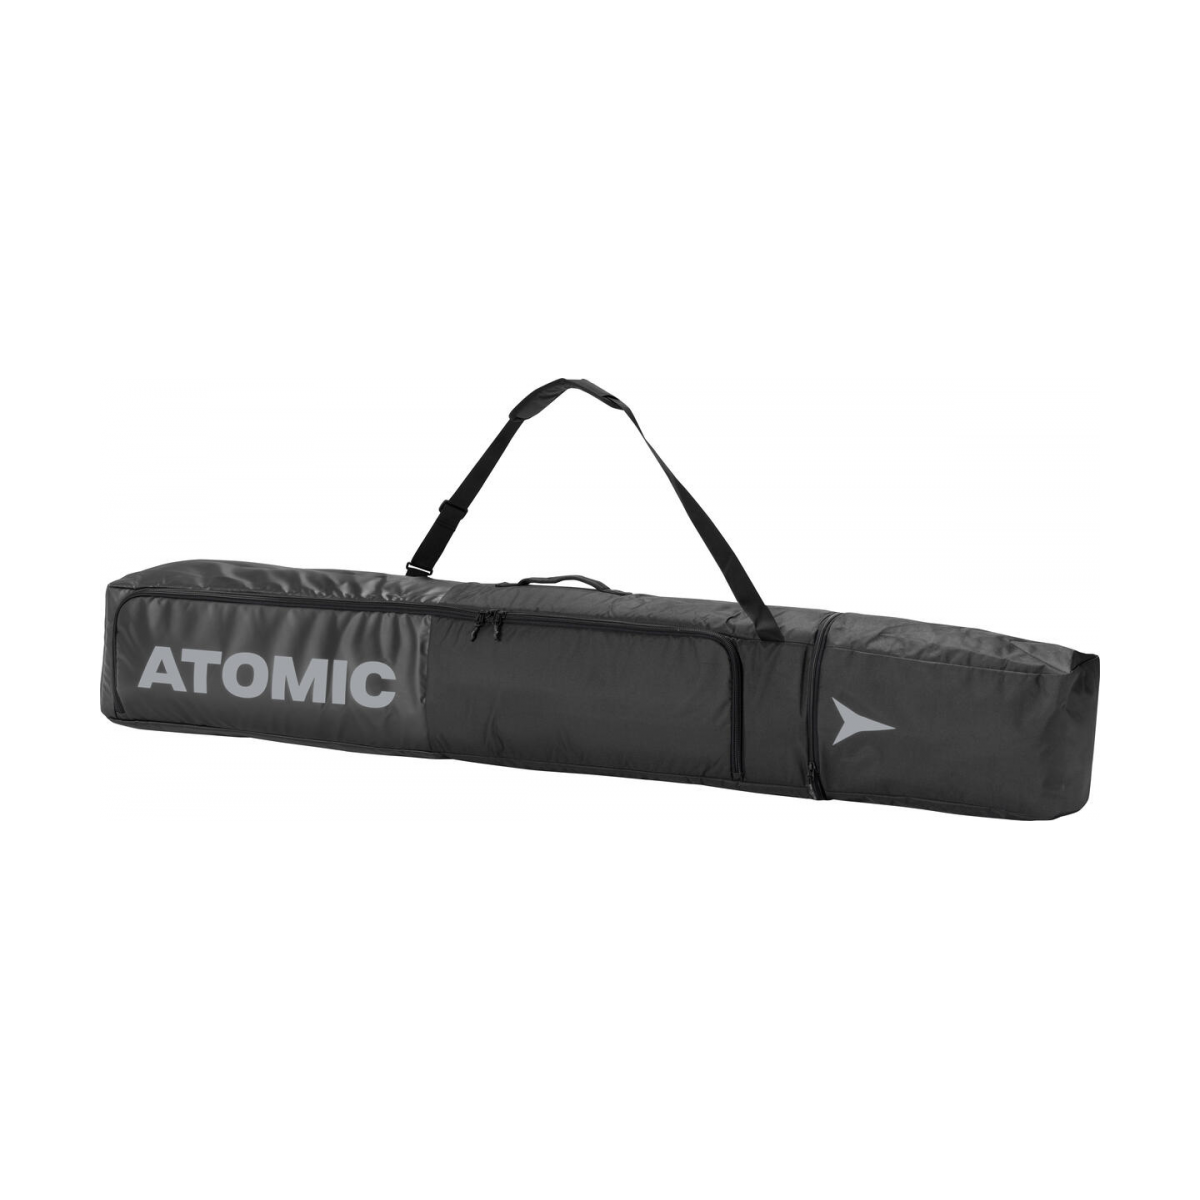 ATOMIC ski bag DOUBLE SKI BLACK/GREY